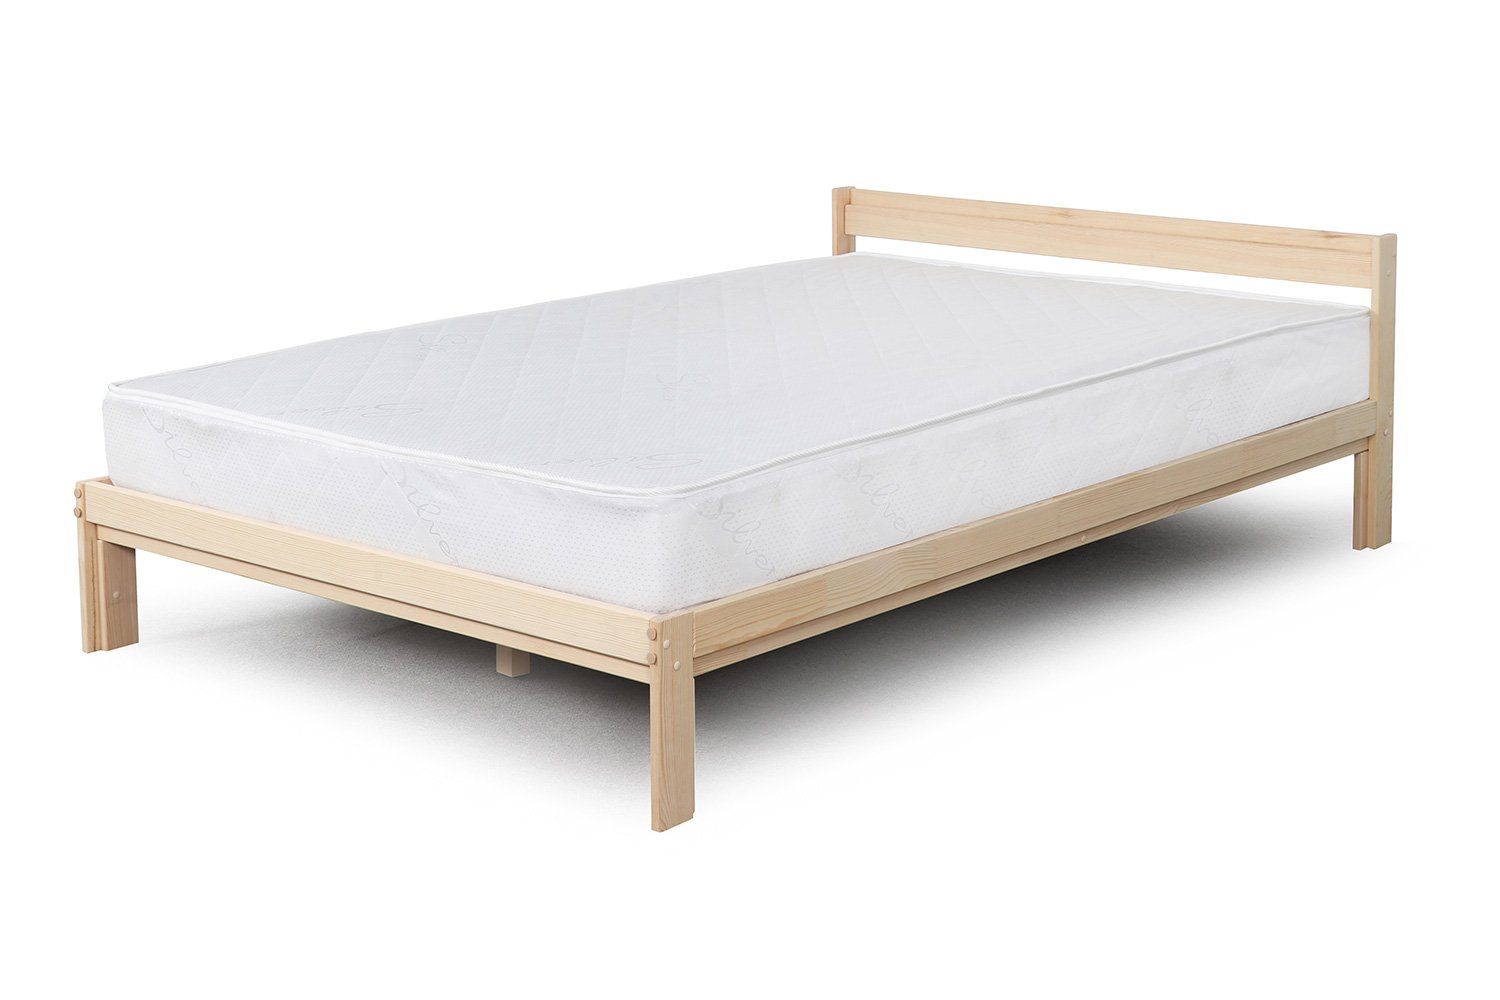 Hoff кровати двуспальные кровати